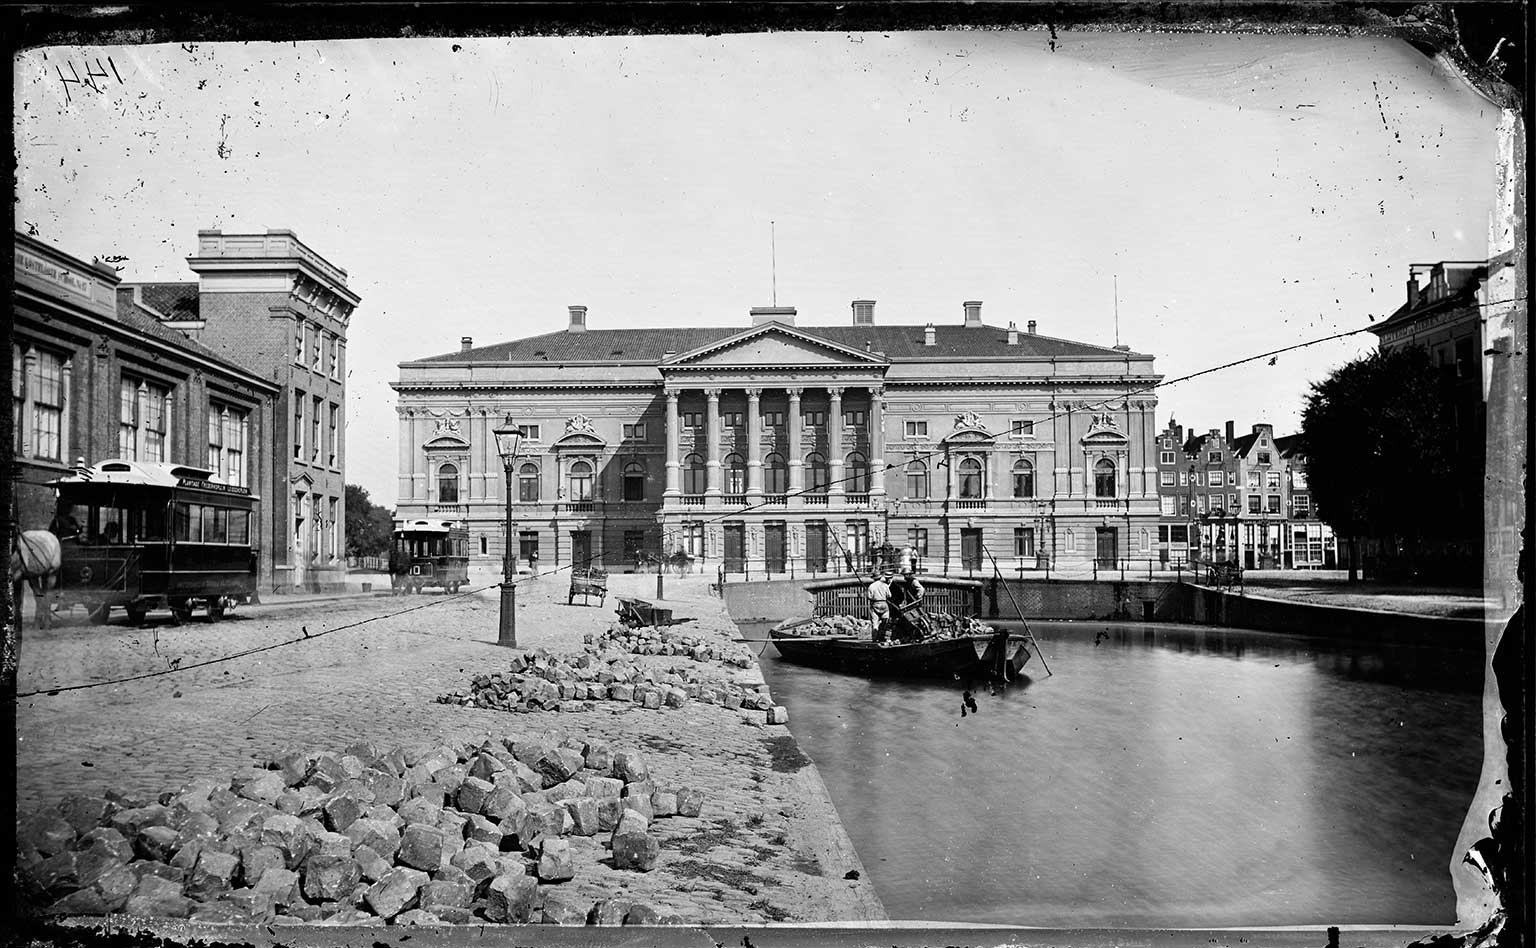 First Stadsschouwburg, Amsterdam, Leidseplein, between 1874 and 1882